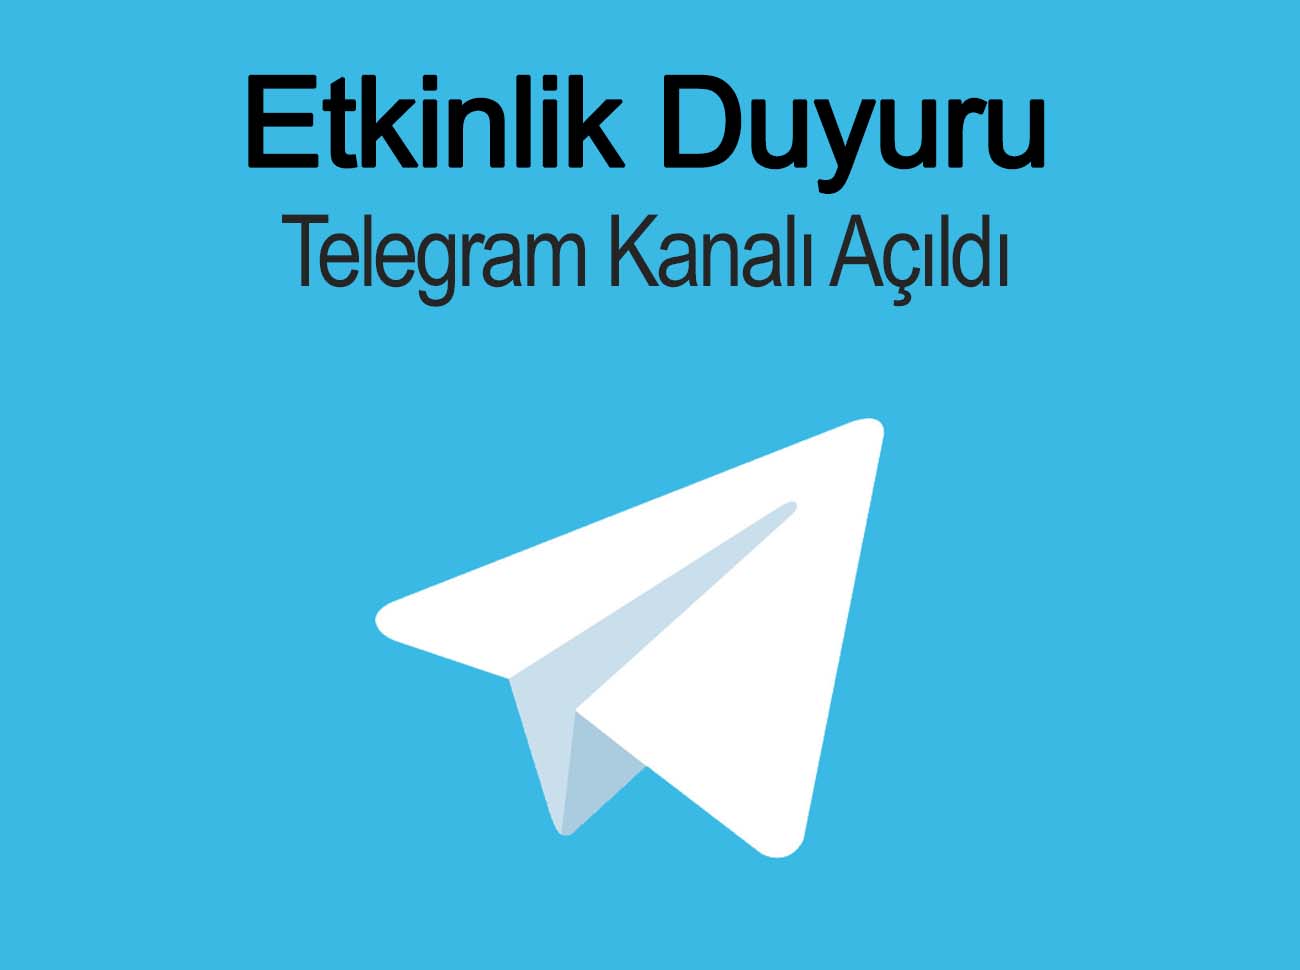 Etkinlik Duyuru Odaklı Telegram Kanalı